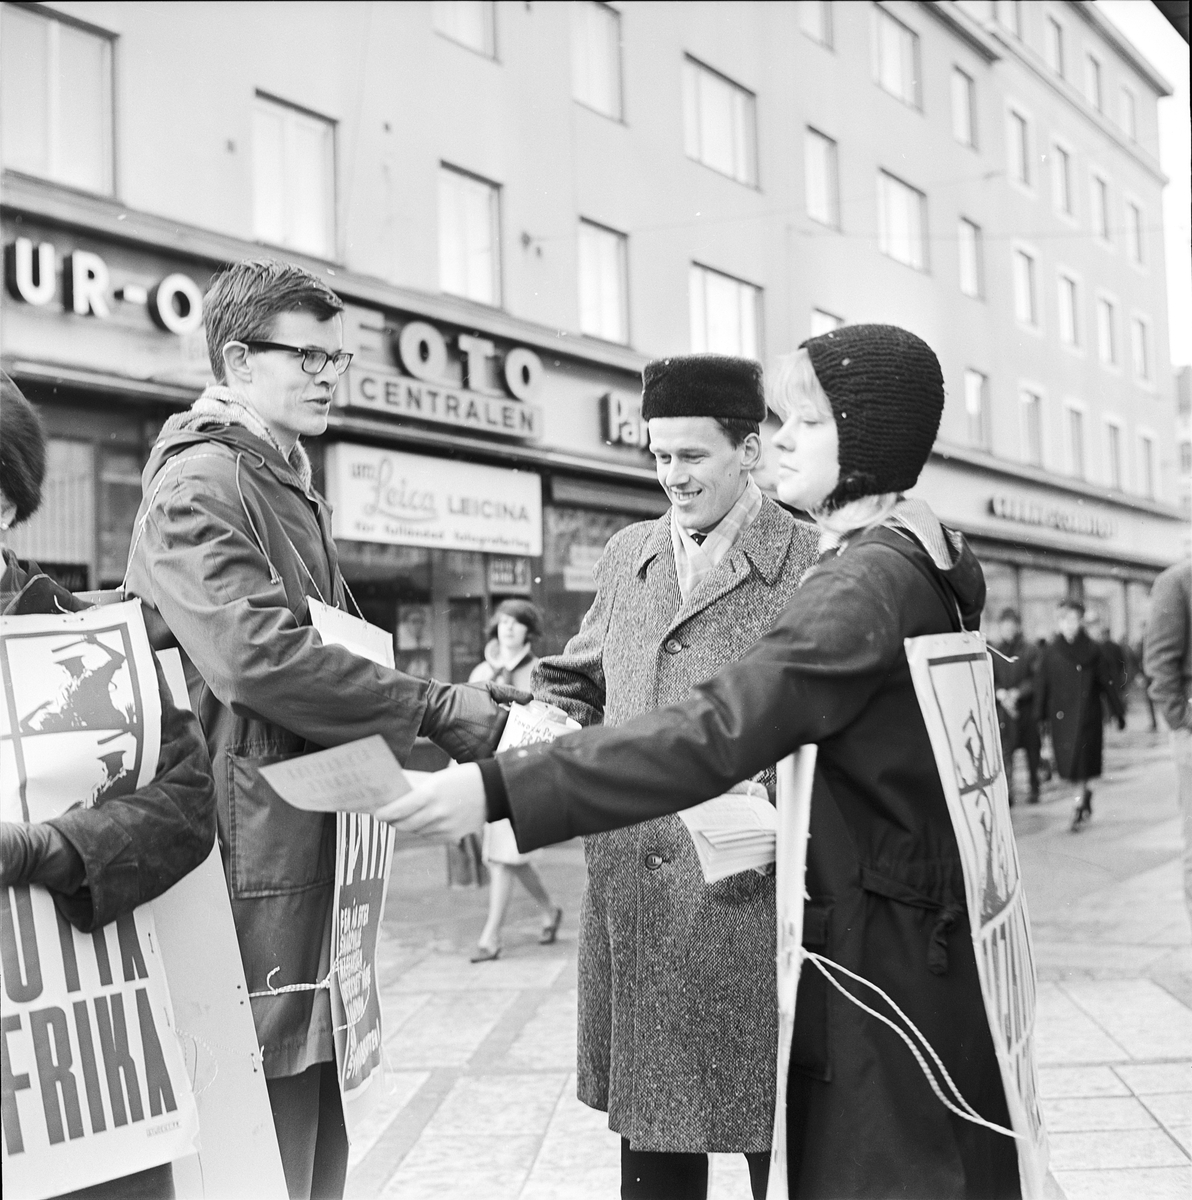 Uppsala Sydafrikakommitté håller manifestation/protest, Uppsala 1965